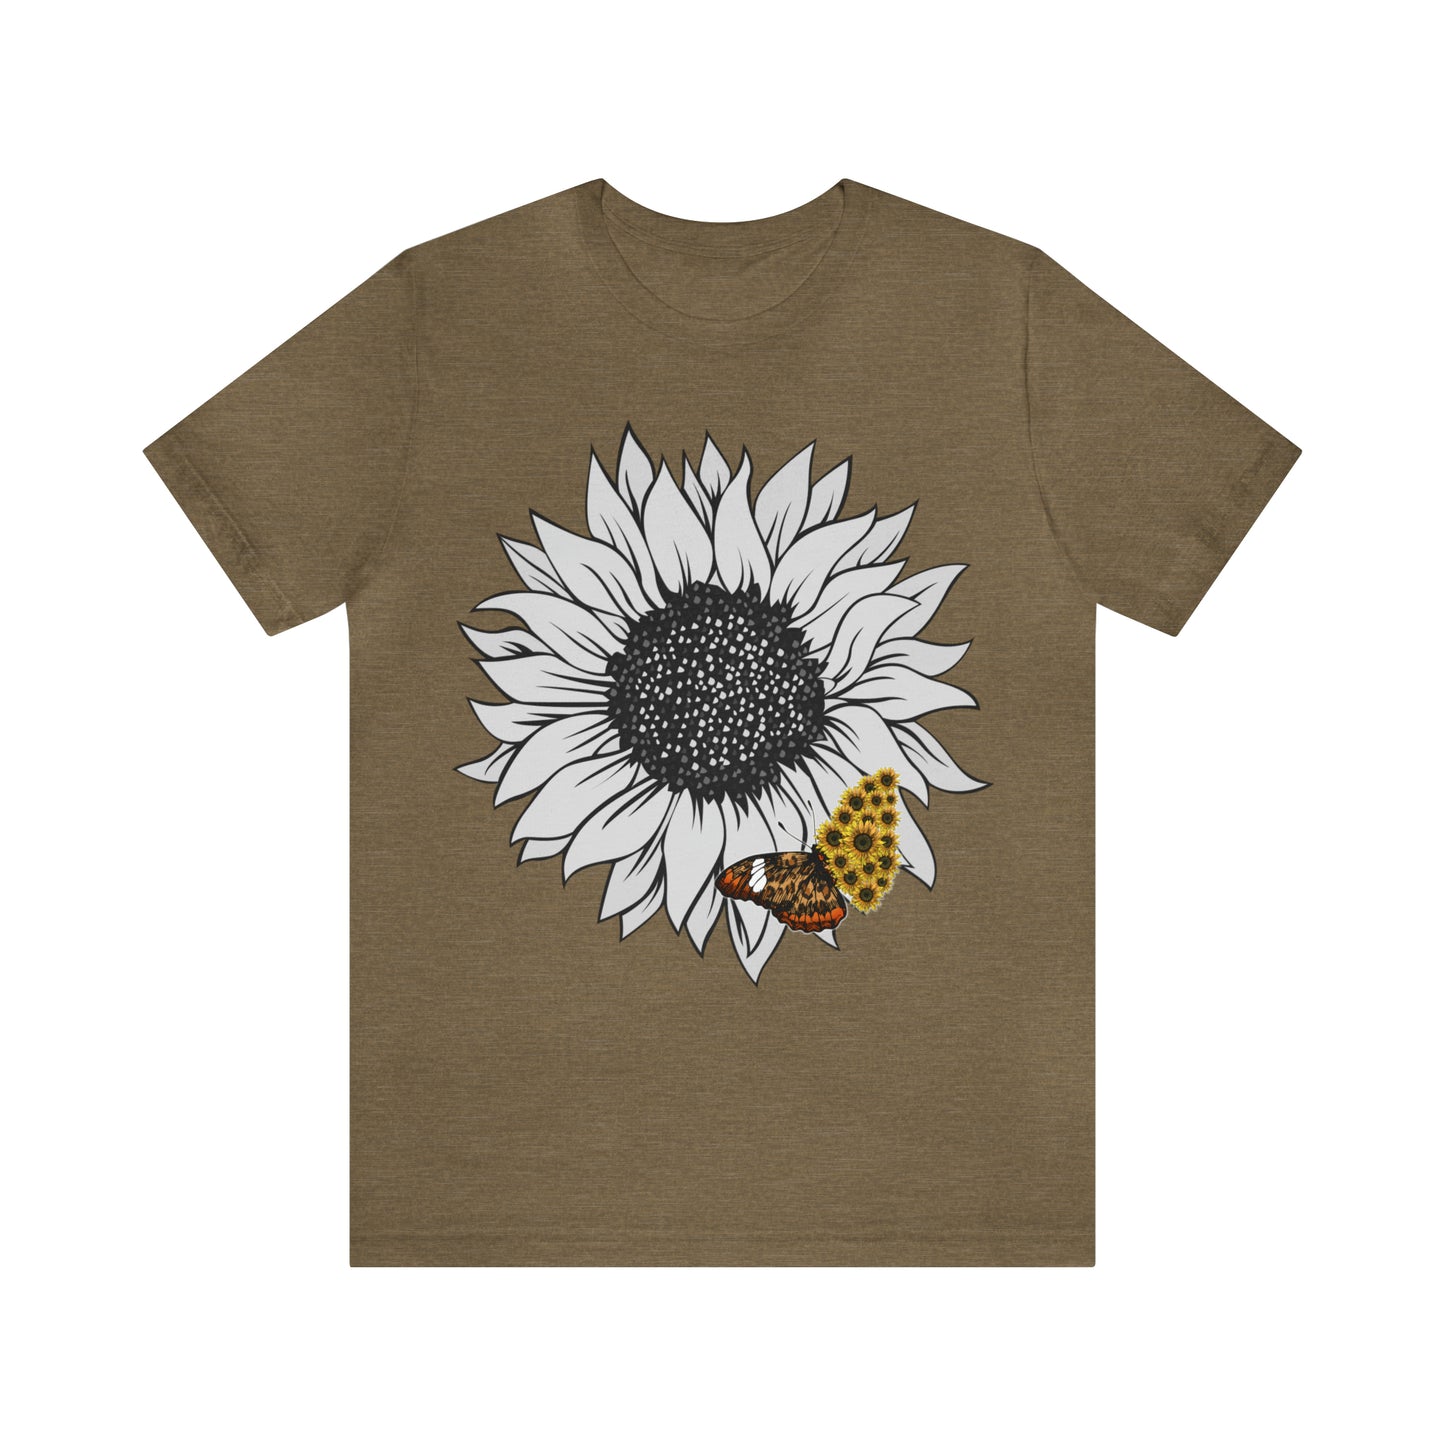 Flower Shirt, Sunflower Shirt, Floral Tee Shirt, Garden Shirt, Womens Fall Summer Shirt Sunshine Tee, Gift for Gardener, Nature love shirt